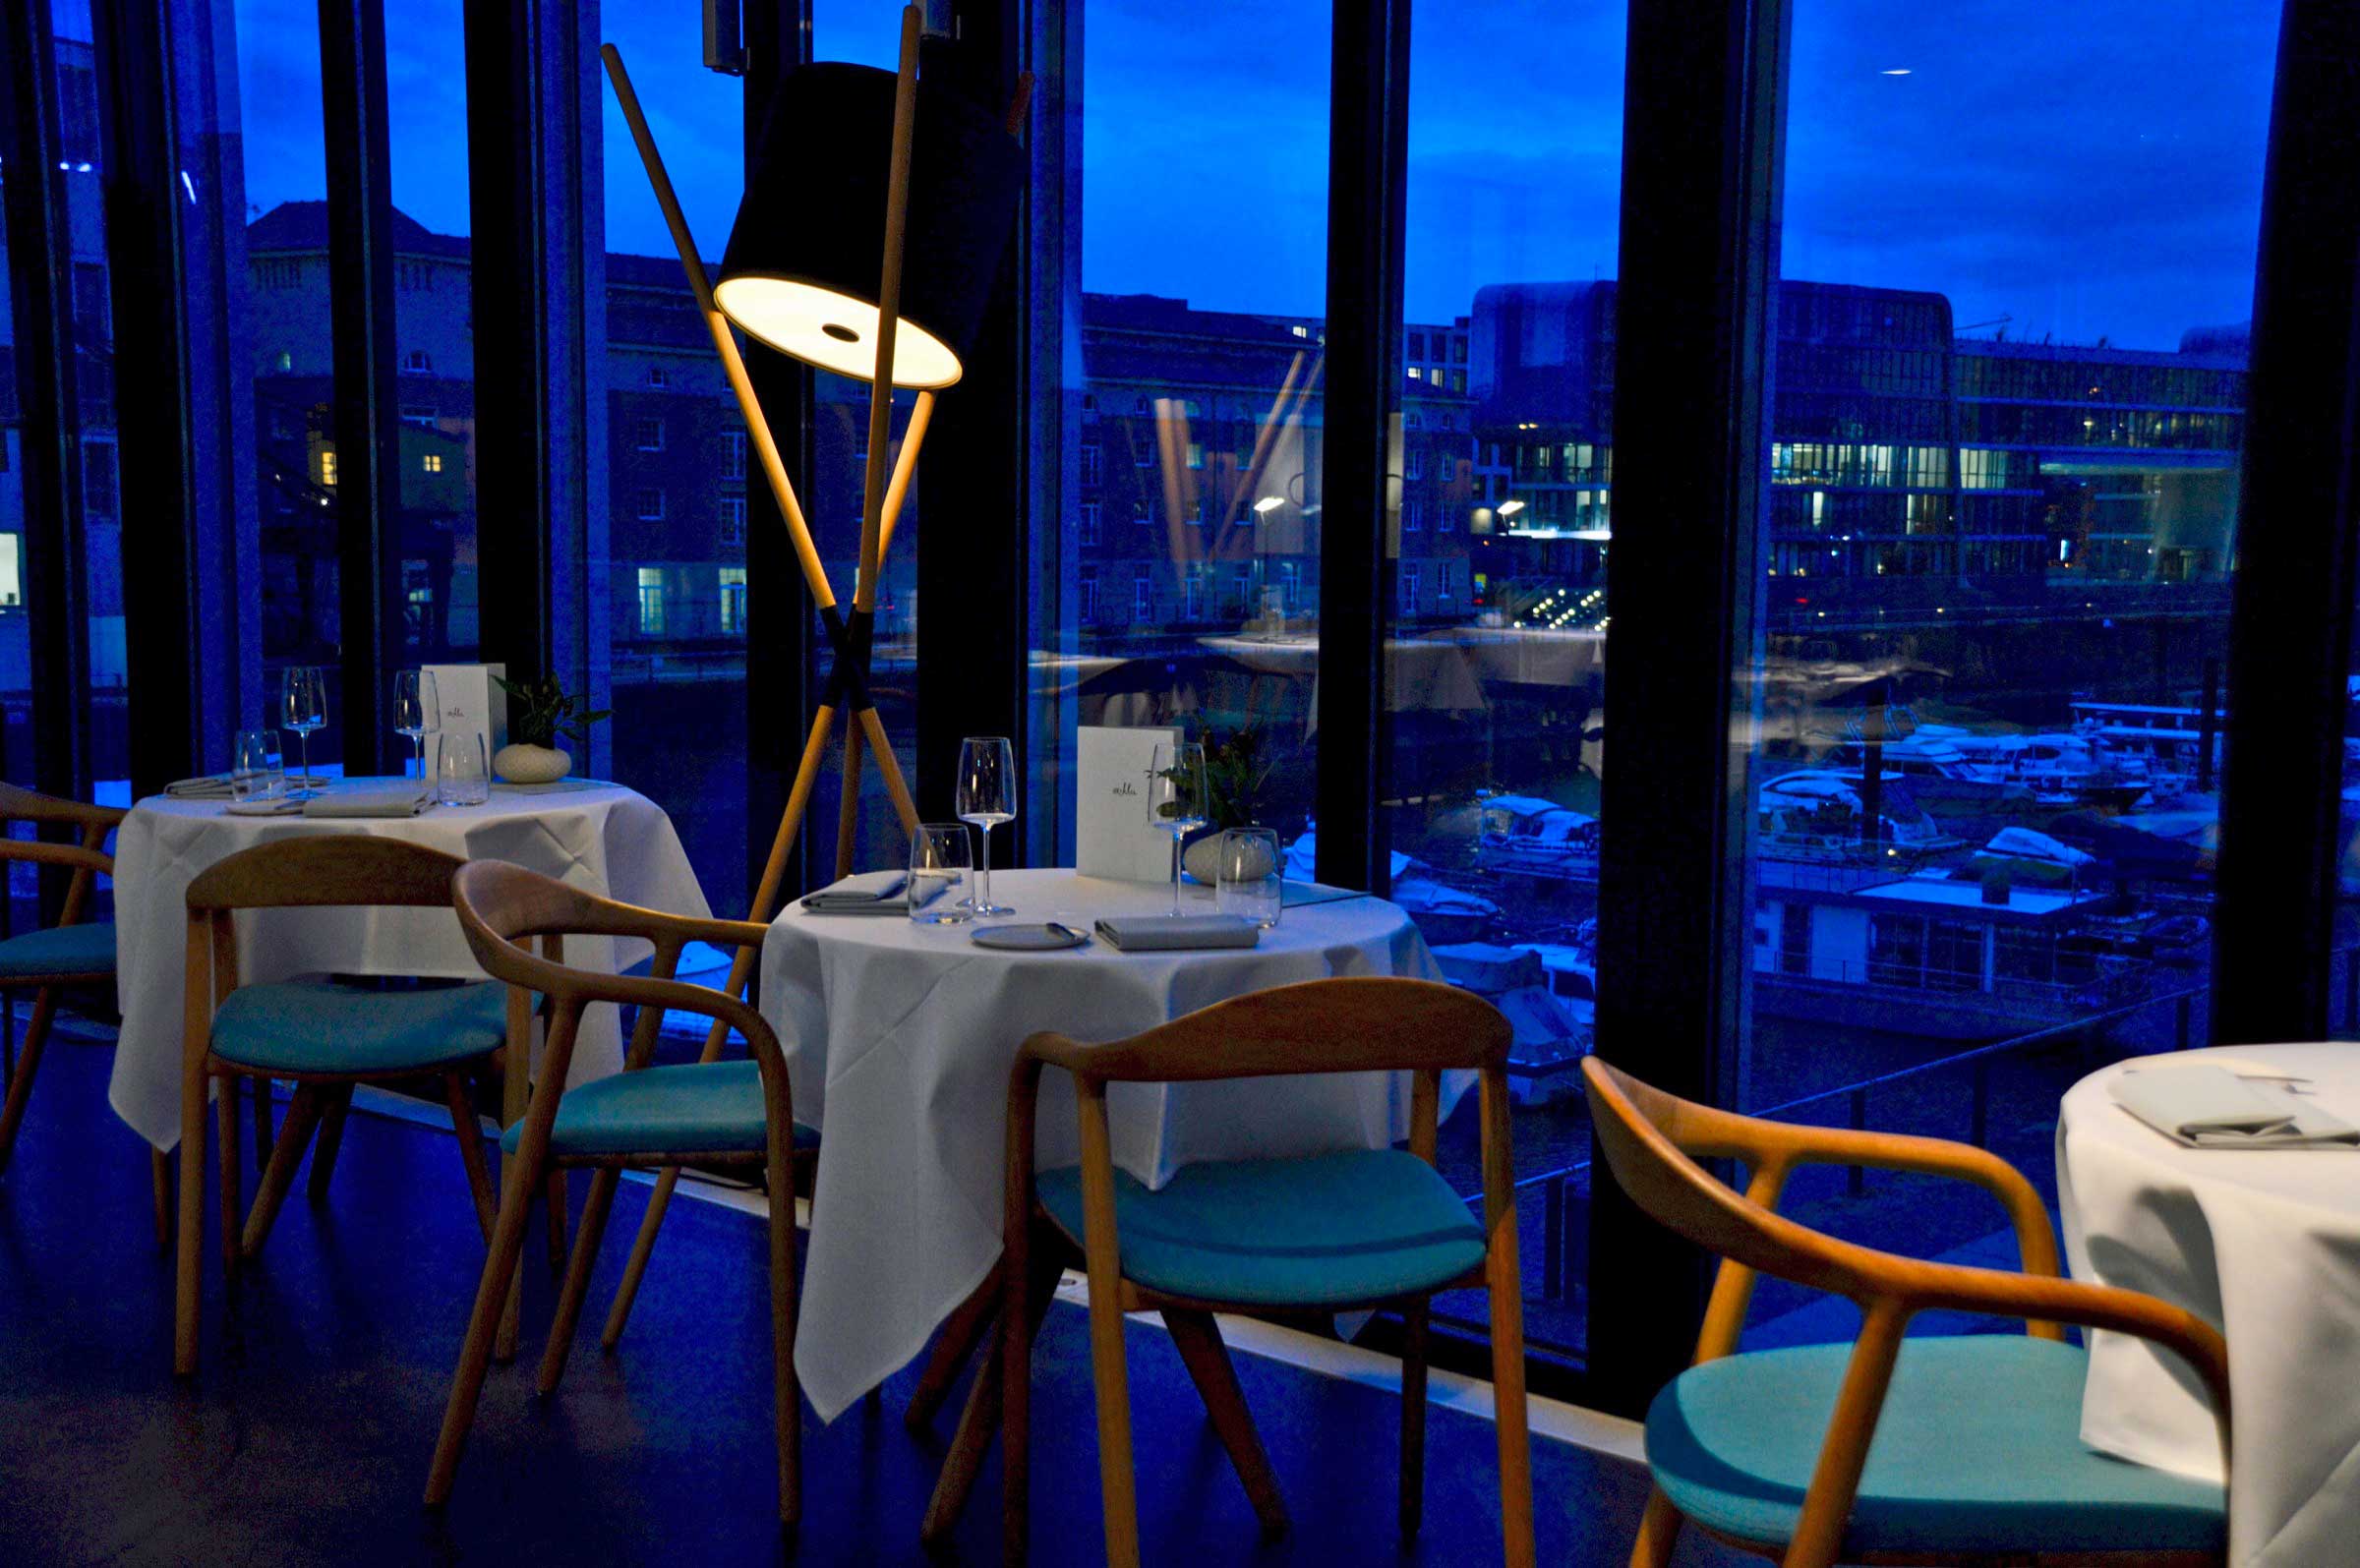 Tisch am Fenster im Restaurant Ox und Klee in Köln